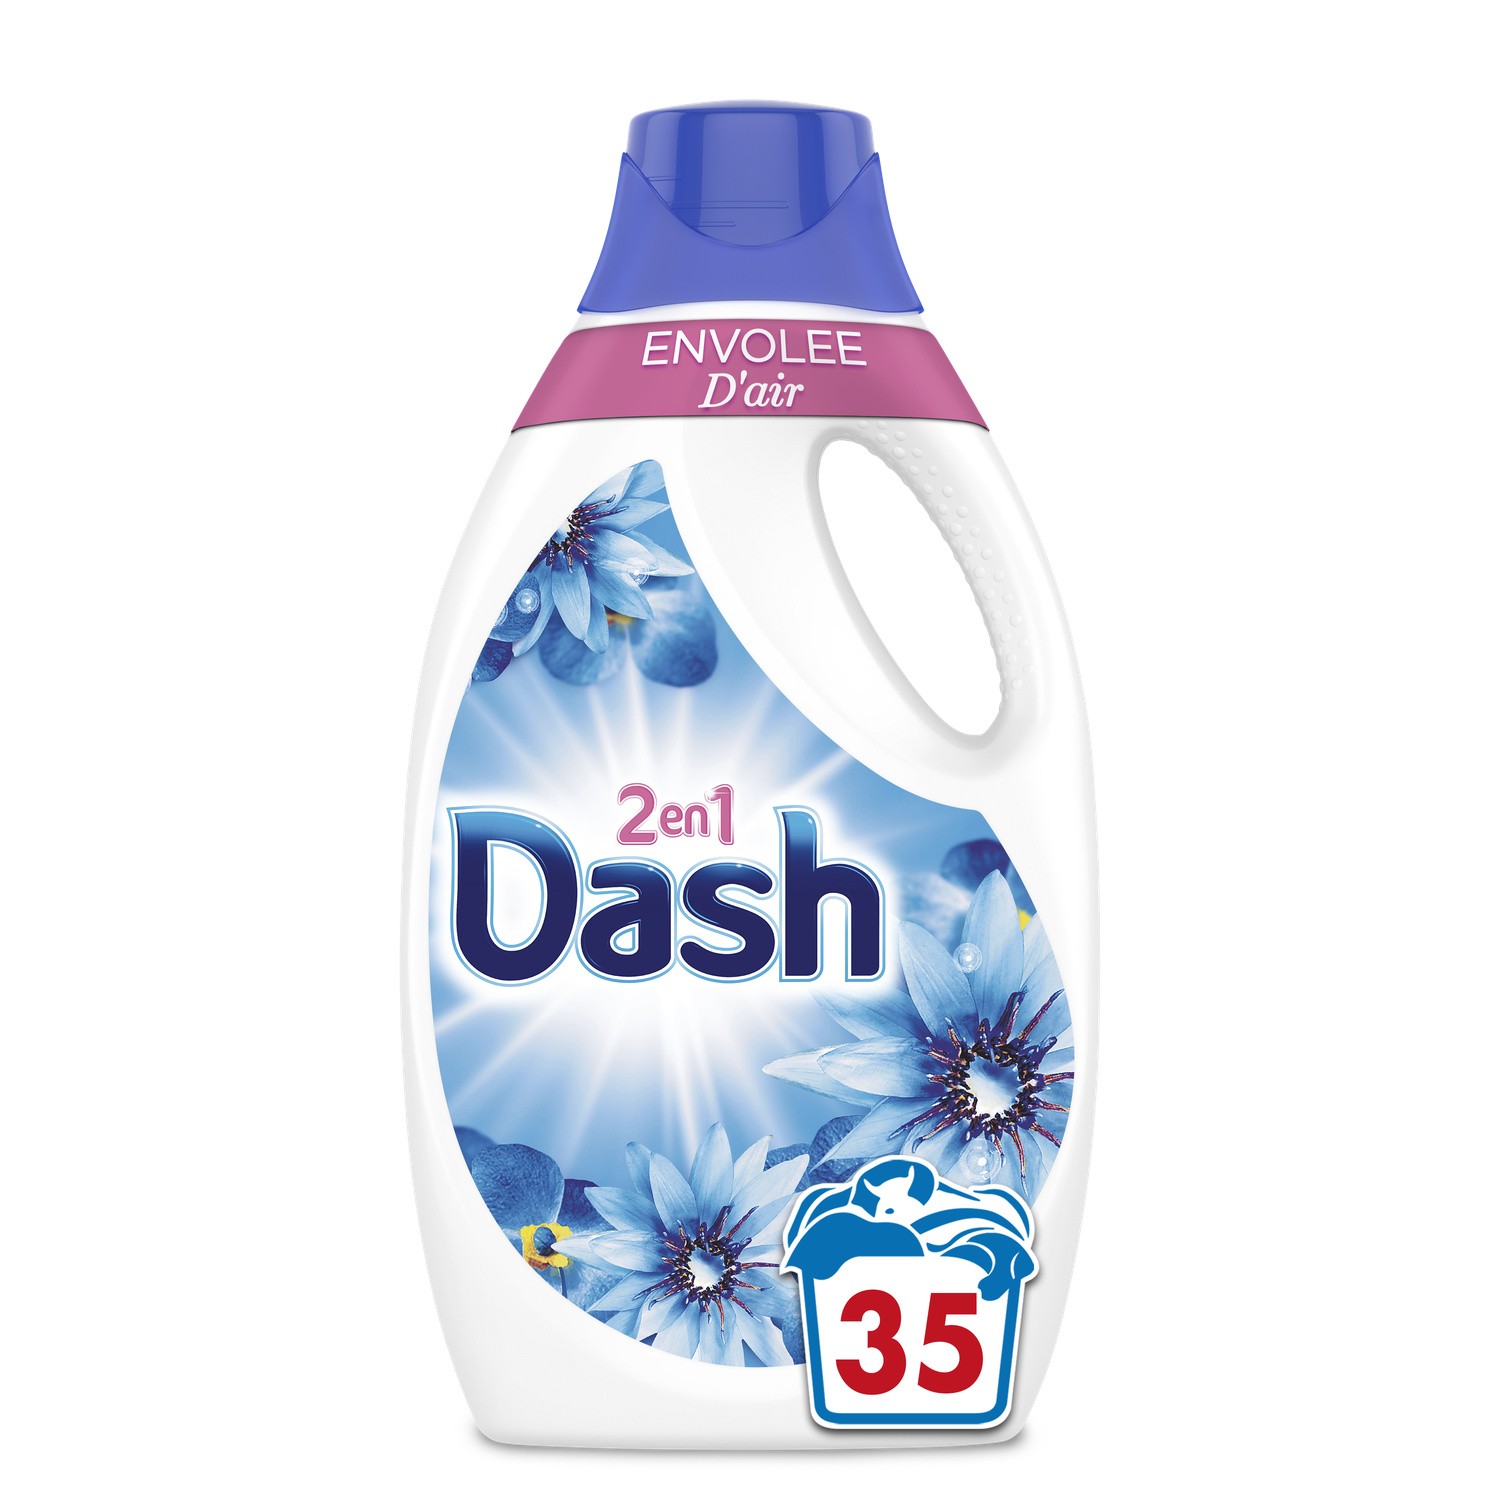 Dash Liquide Fraîcheur de Coton